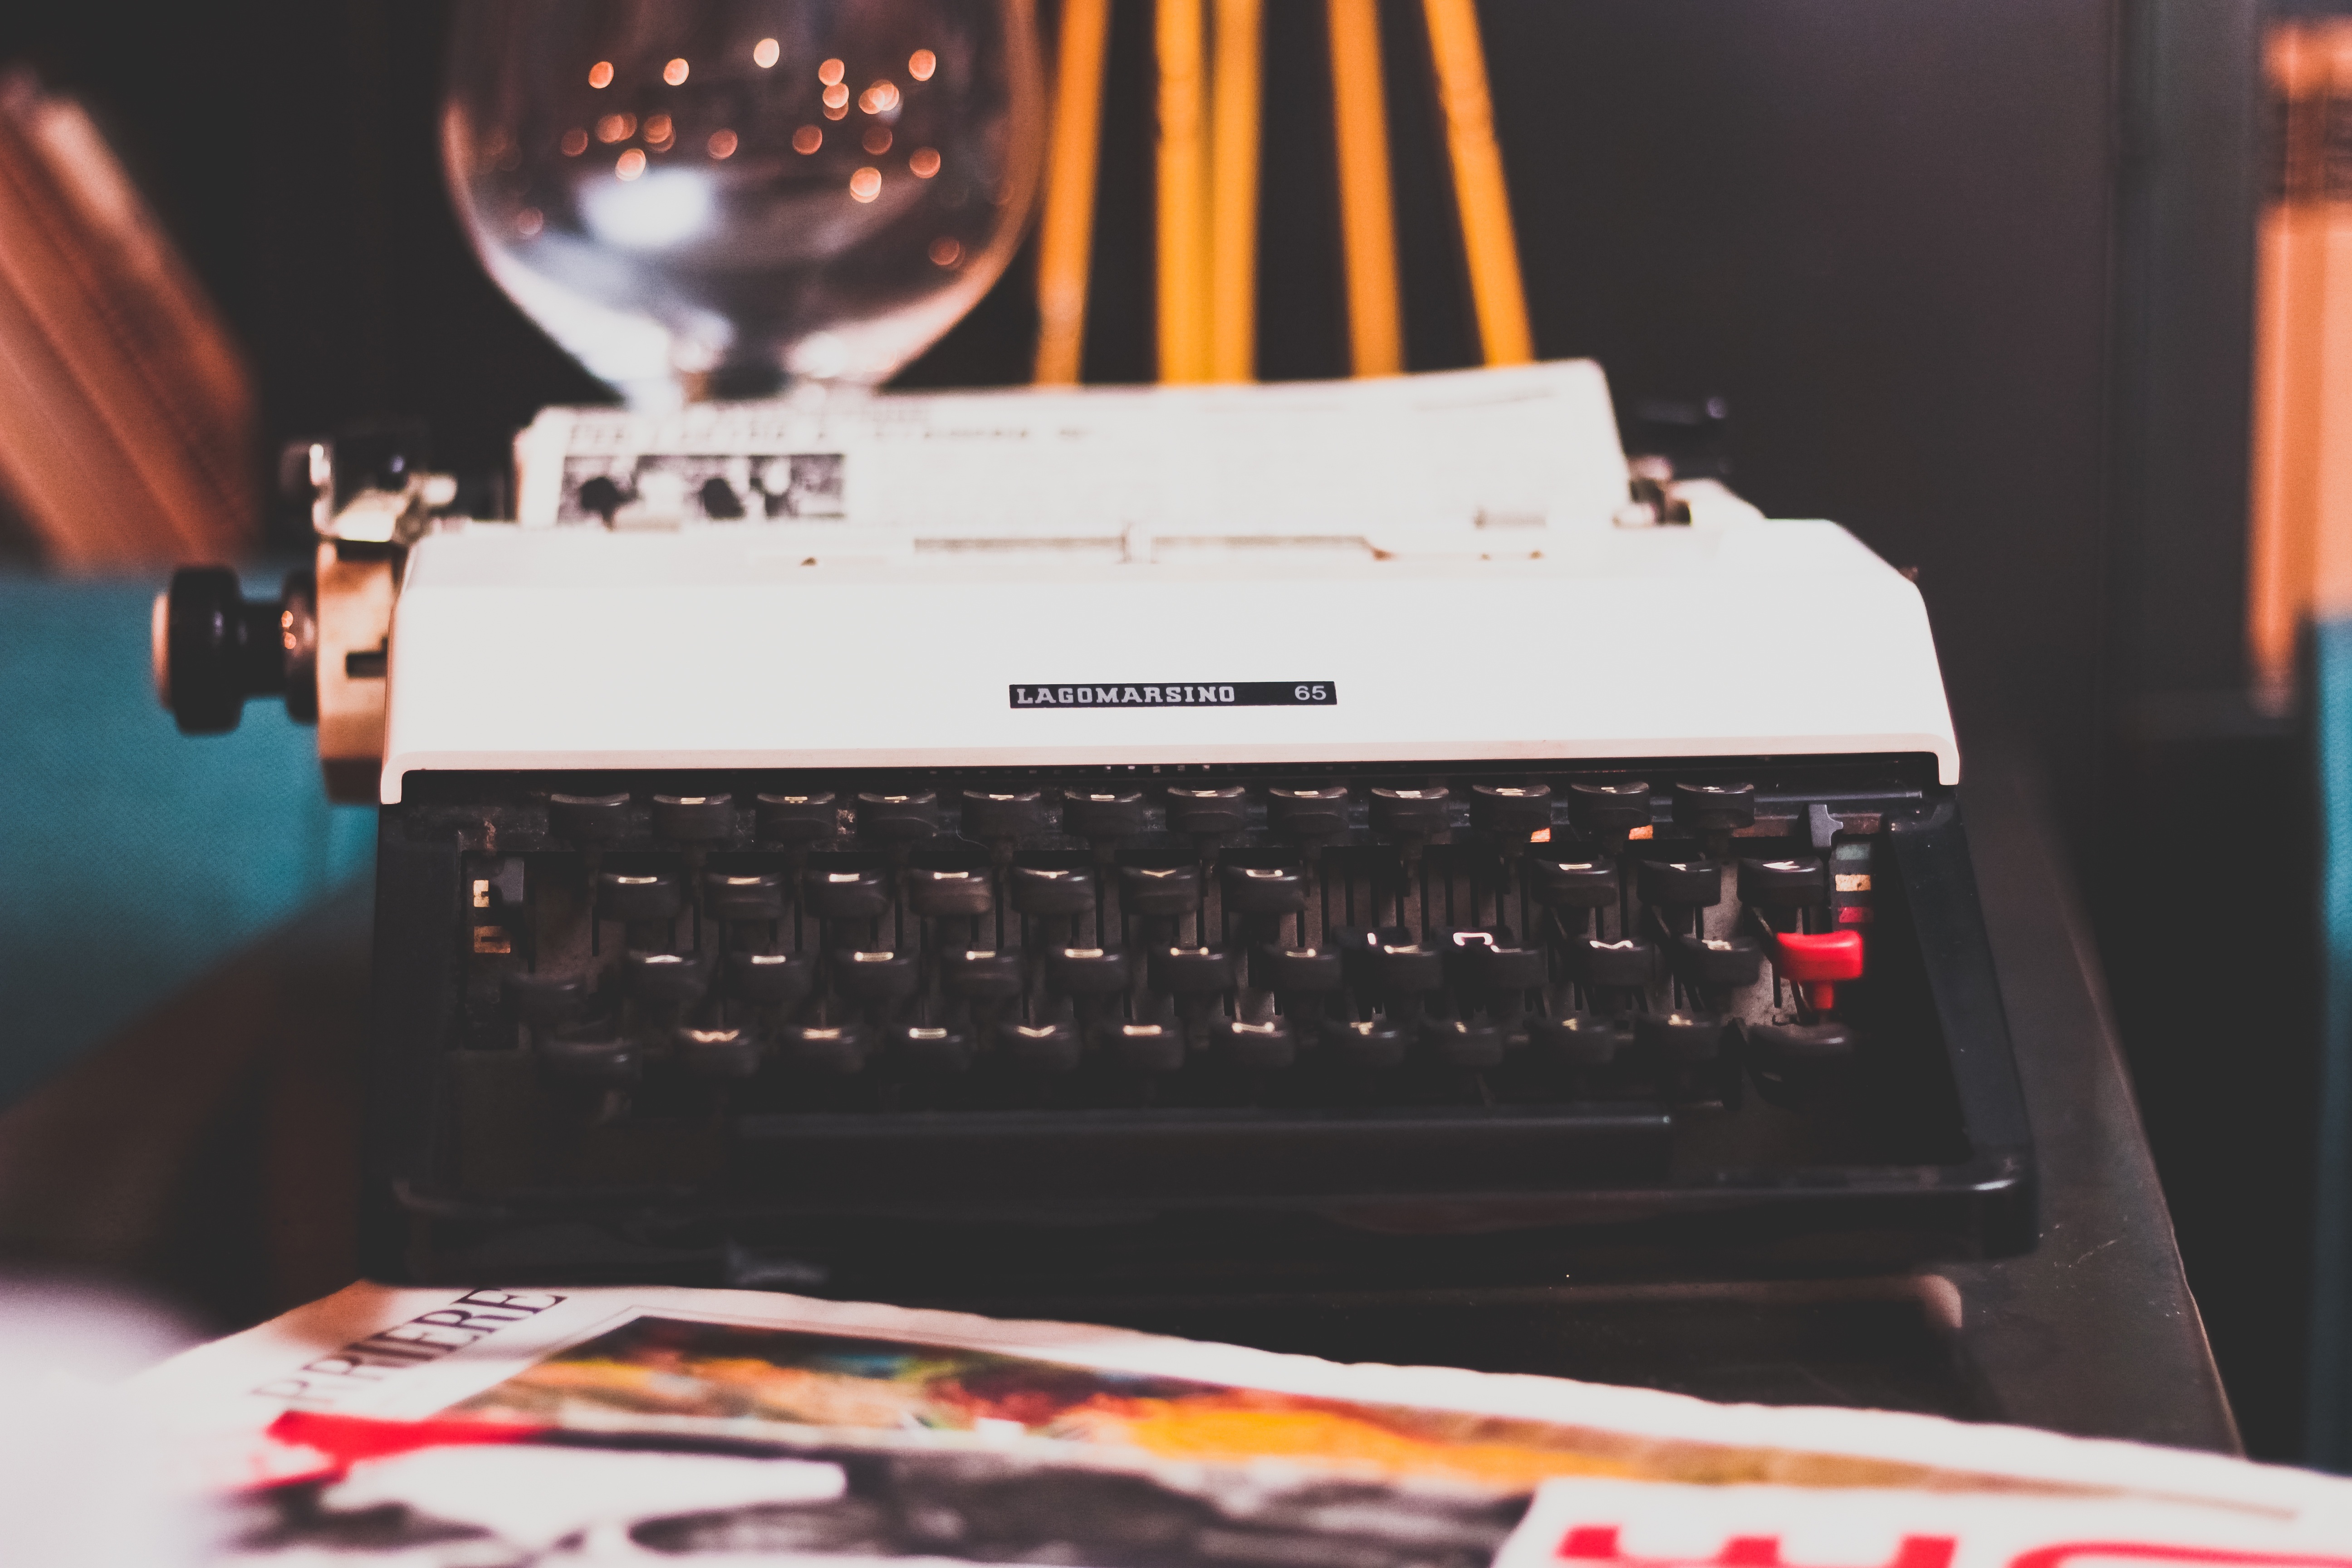 miscellanea, miscellaneous, retro, keys, typewriter